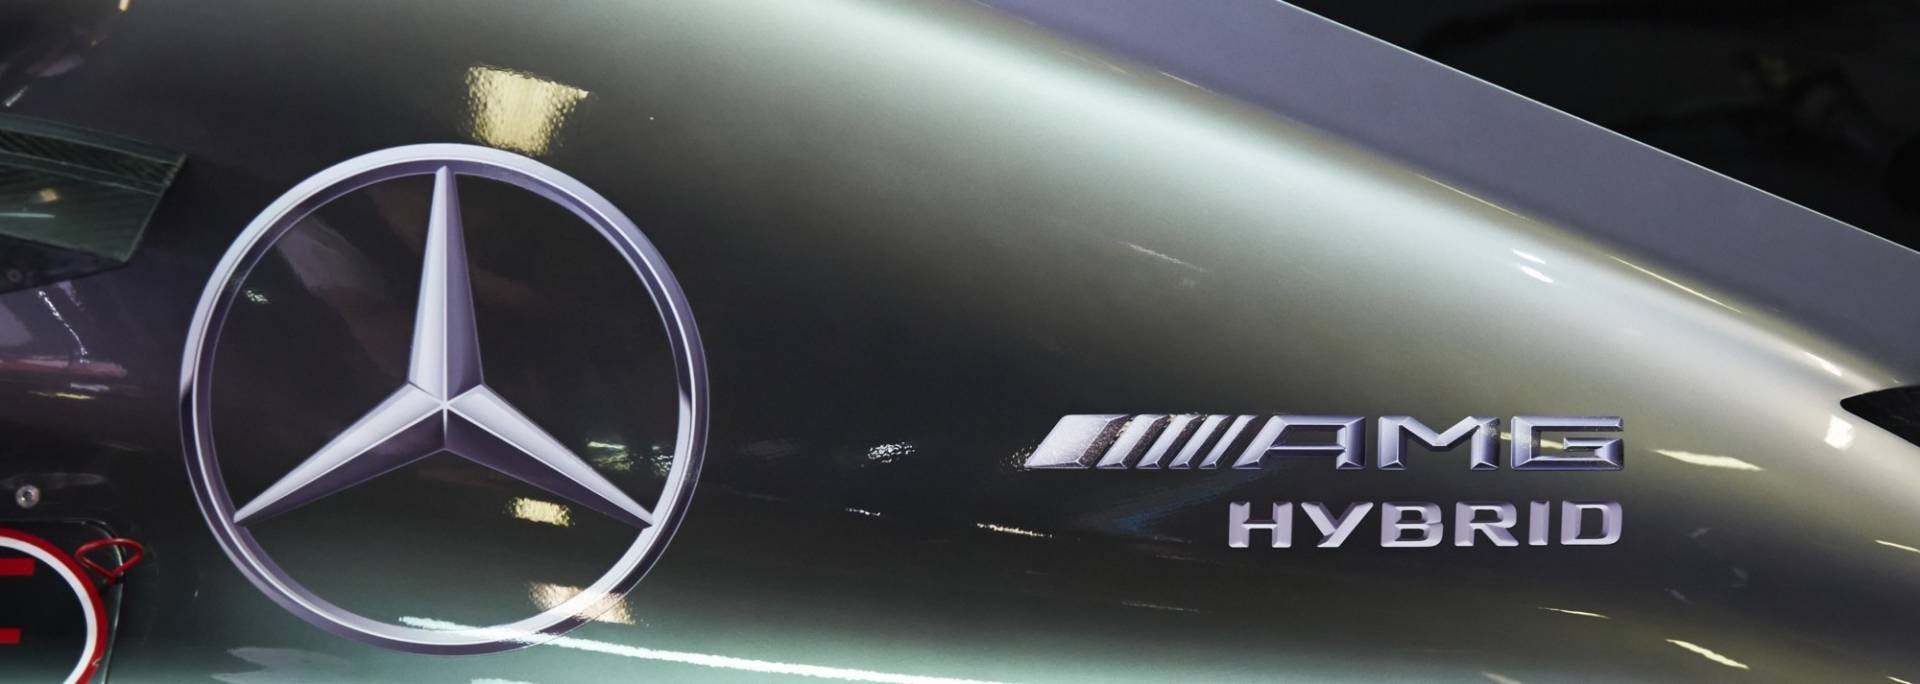 Formula-1-es autó motorborítása, Mercedes és AMG logókkal